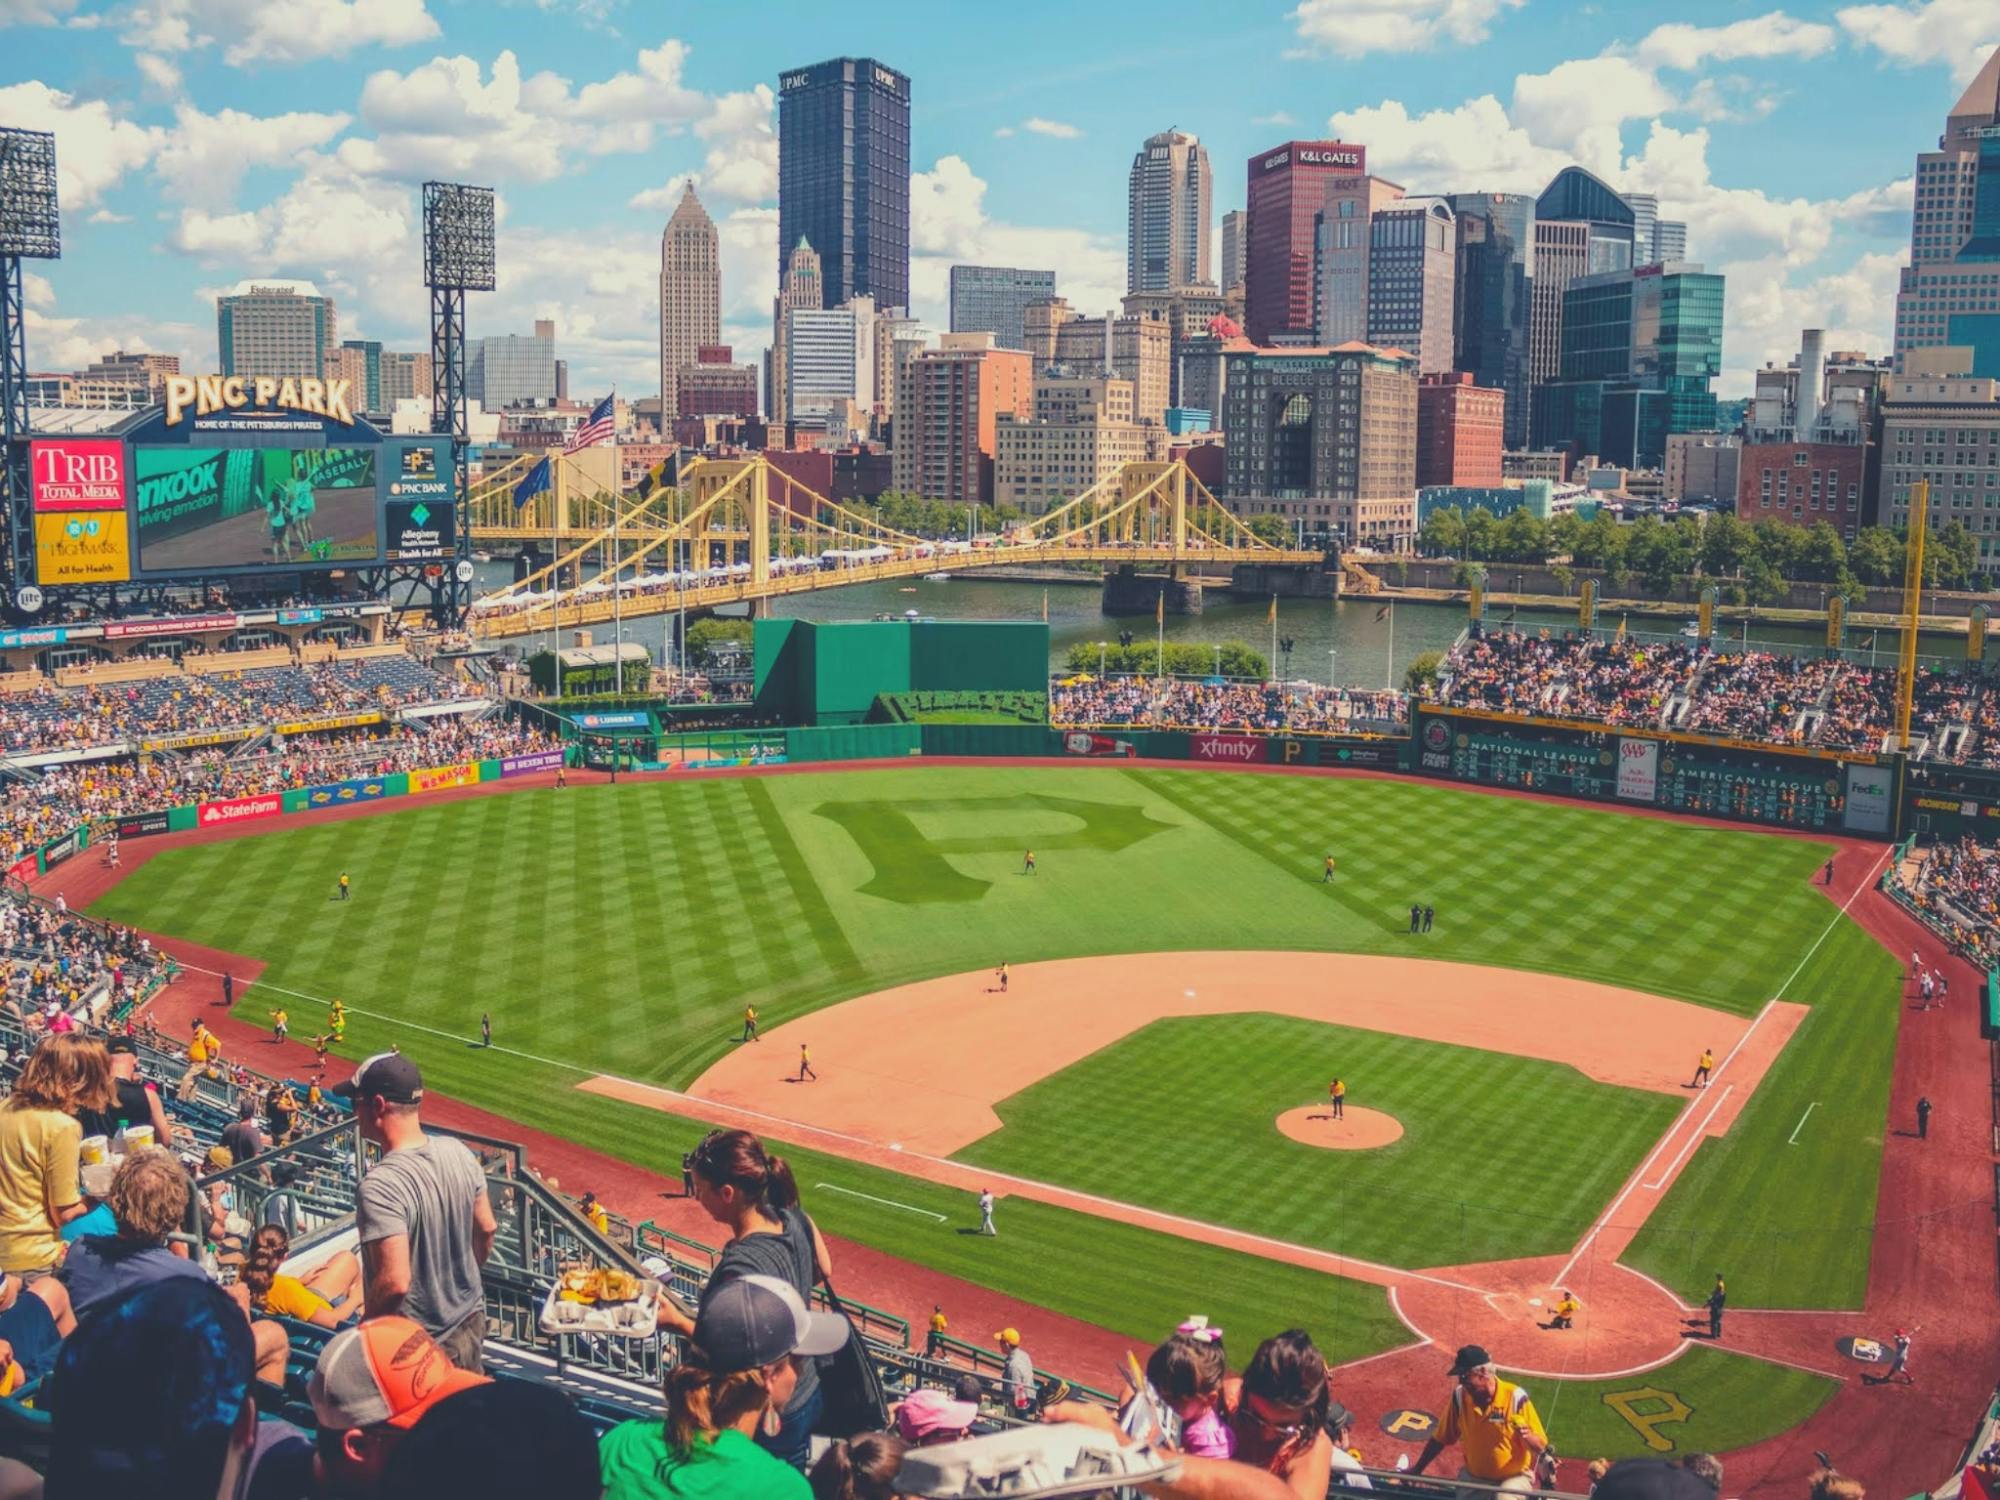 Ingressos para jogos de beisebol do Pittsburgh Pirates no PNC Park